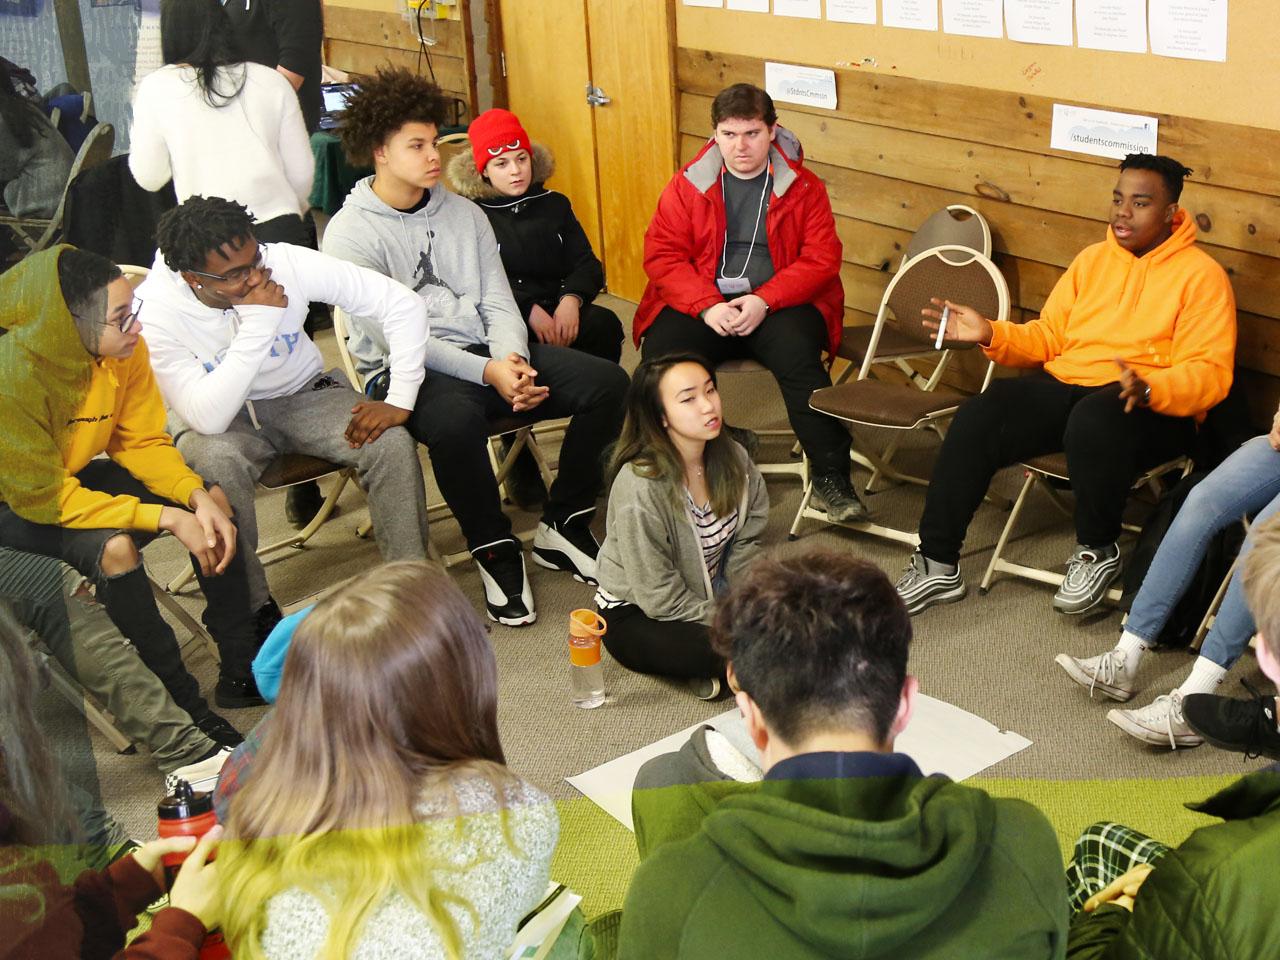 Des jeunes discutant en groupe lors d’une conférence.